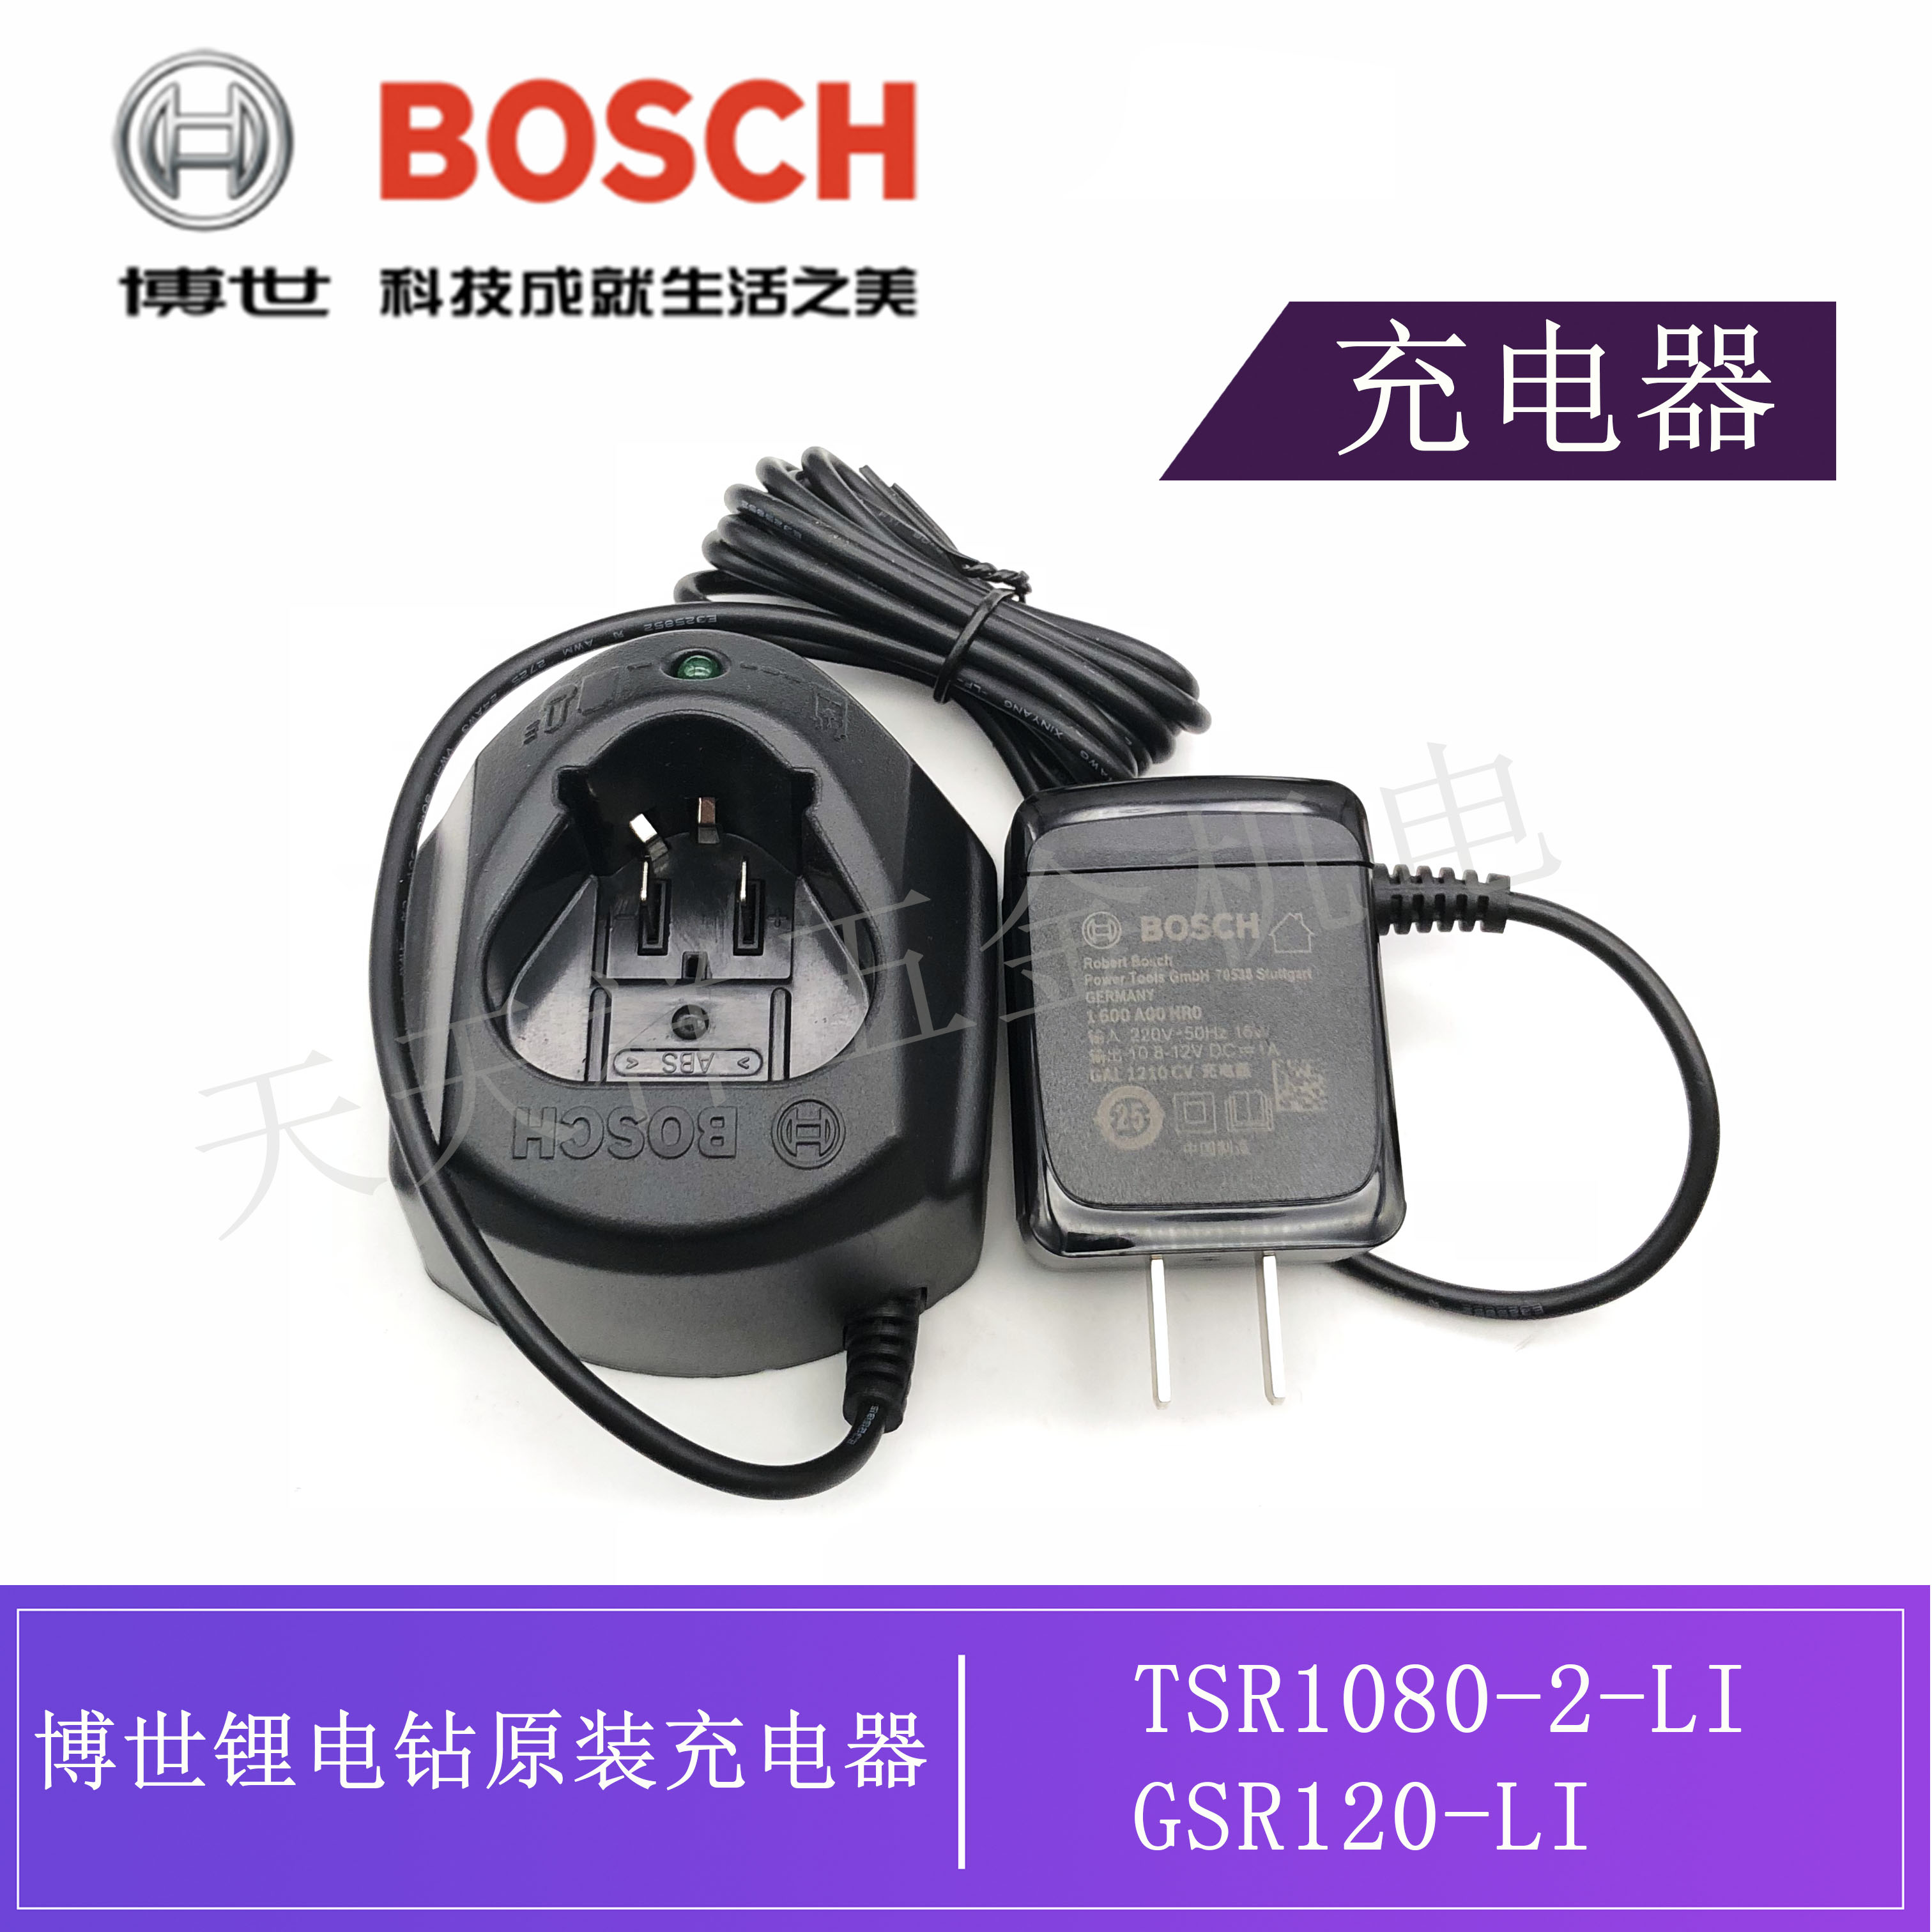 原装博世充电钻GSR120-LI TSR1080-2-LI充电器10.8V/12V博士配件-封面